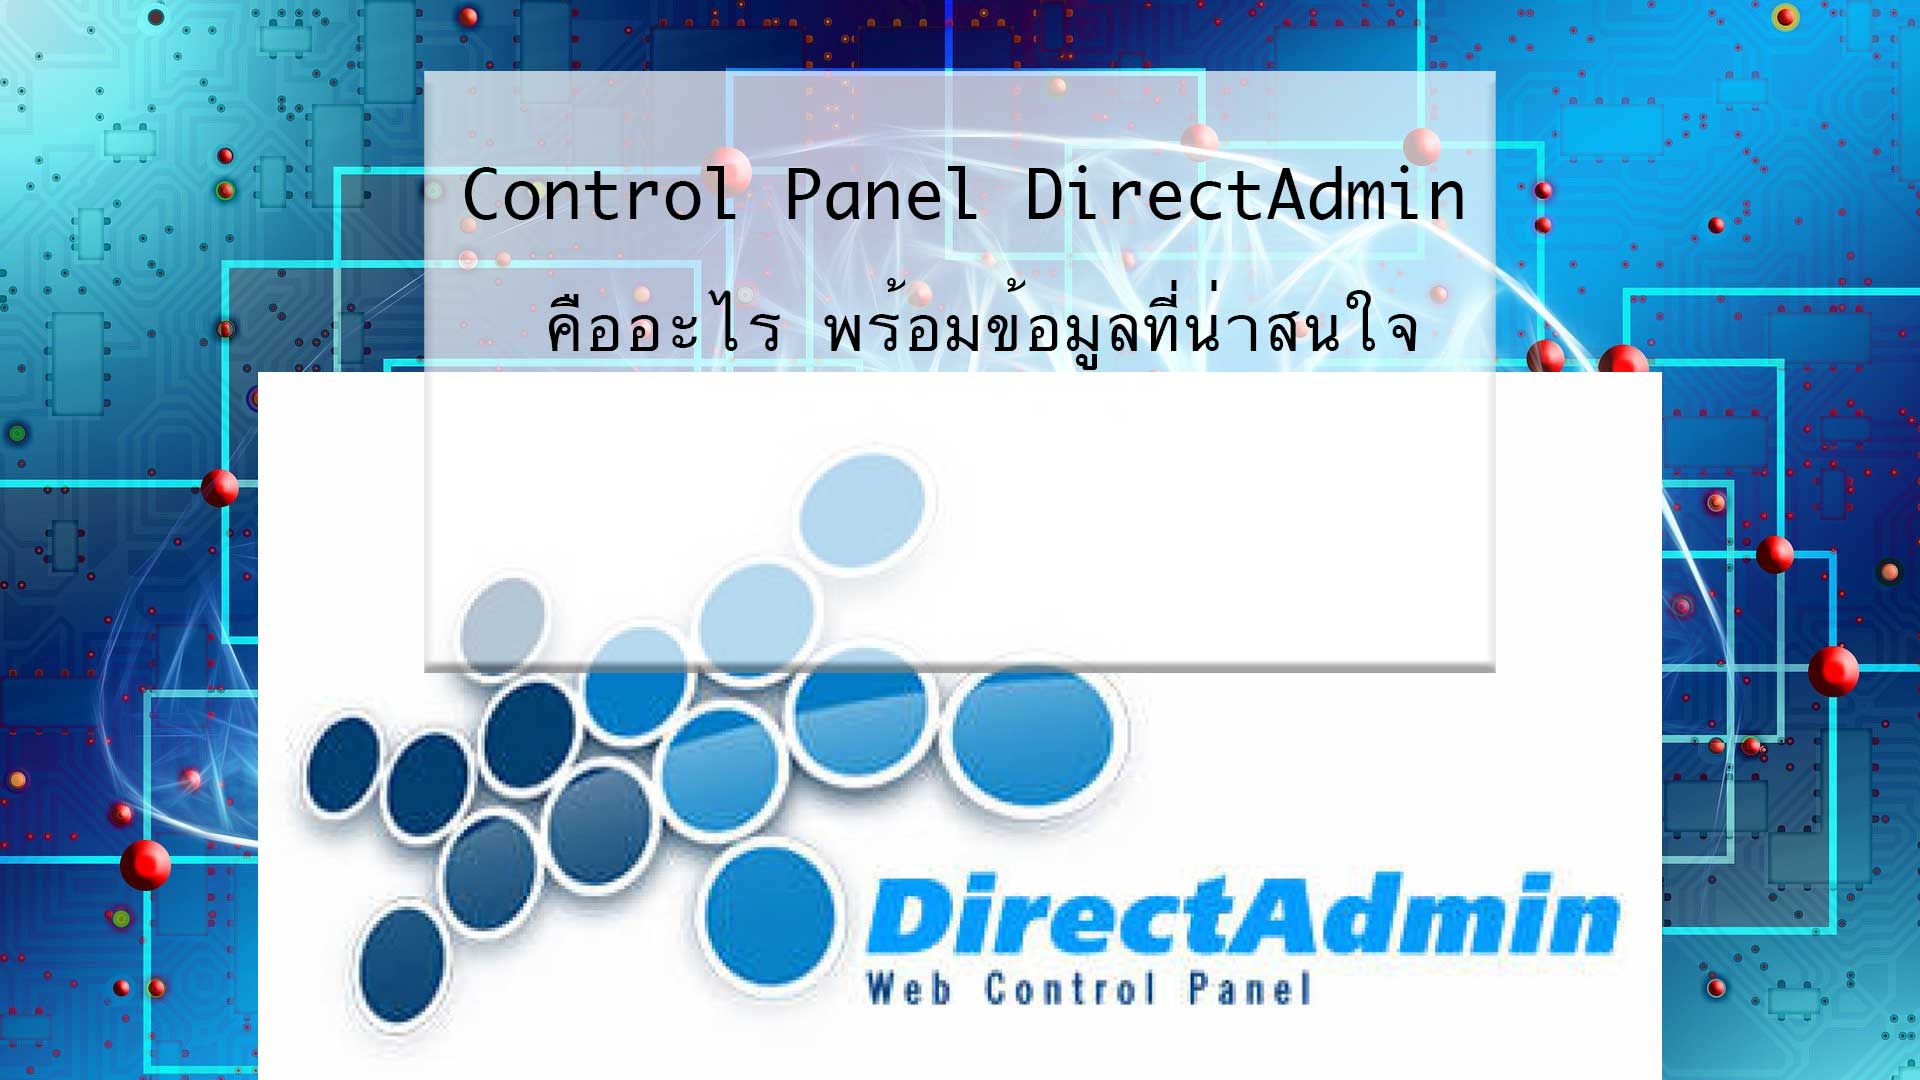 Control Panel DirectAdmin คืออะไร พร้อมข้อมูลที่น่าสนใจ